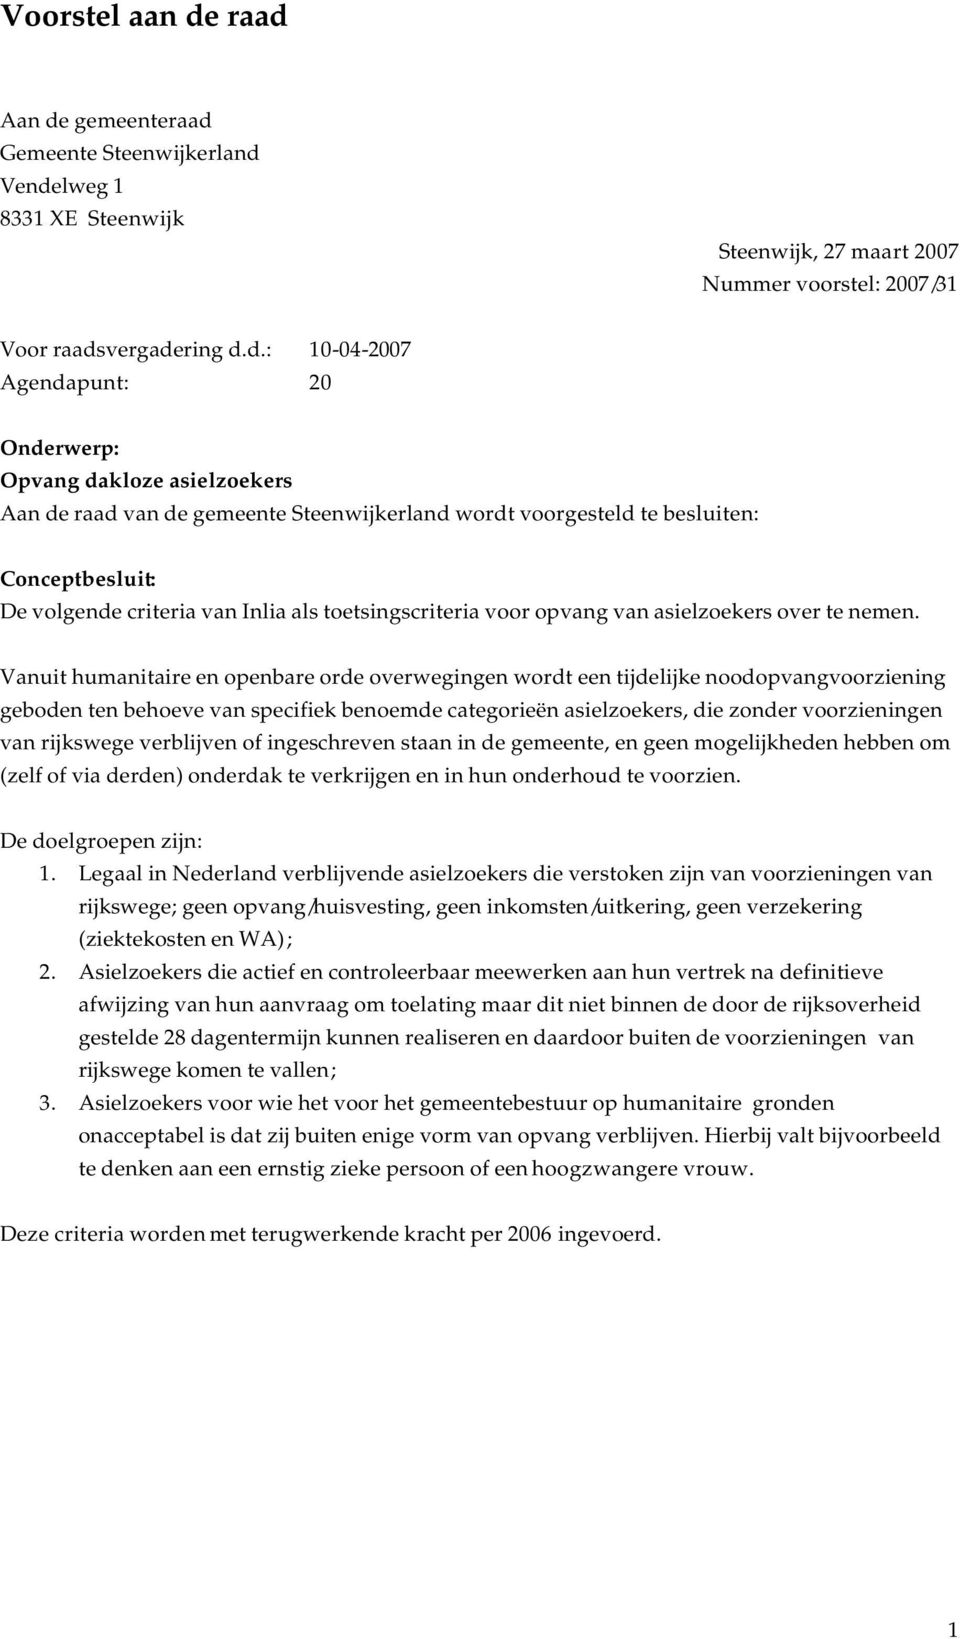 Opvang dakloze asielzoekers Aan de raad van de gemeente Steenwijkerland wordt voorgesteld te besluiten: Conceptbesluit: De volgende criteria van Inlia als toetsingscriteria voor opvang van